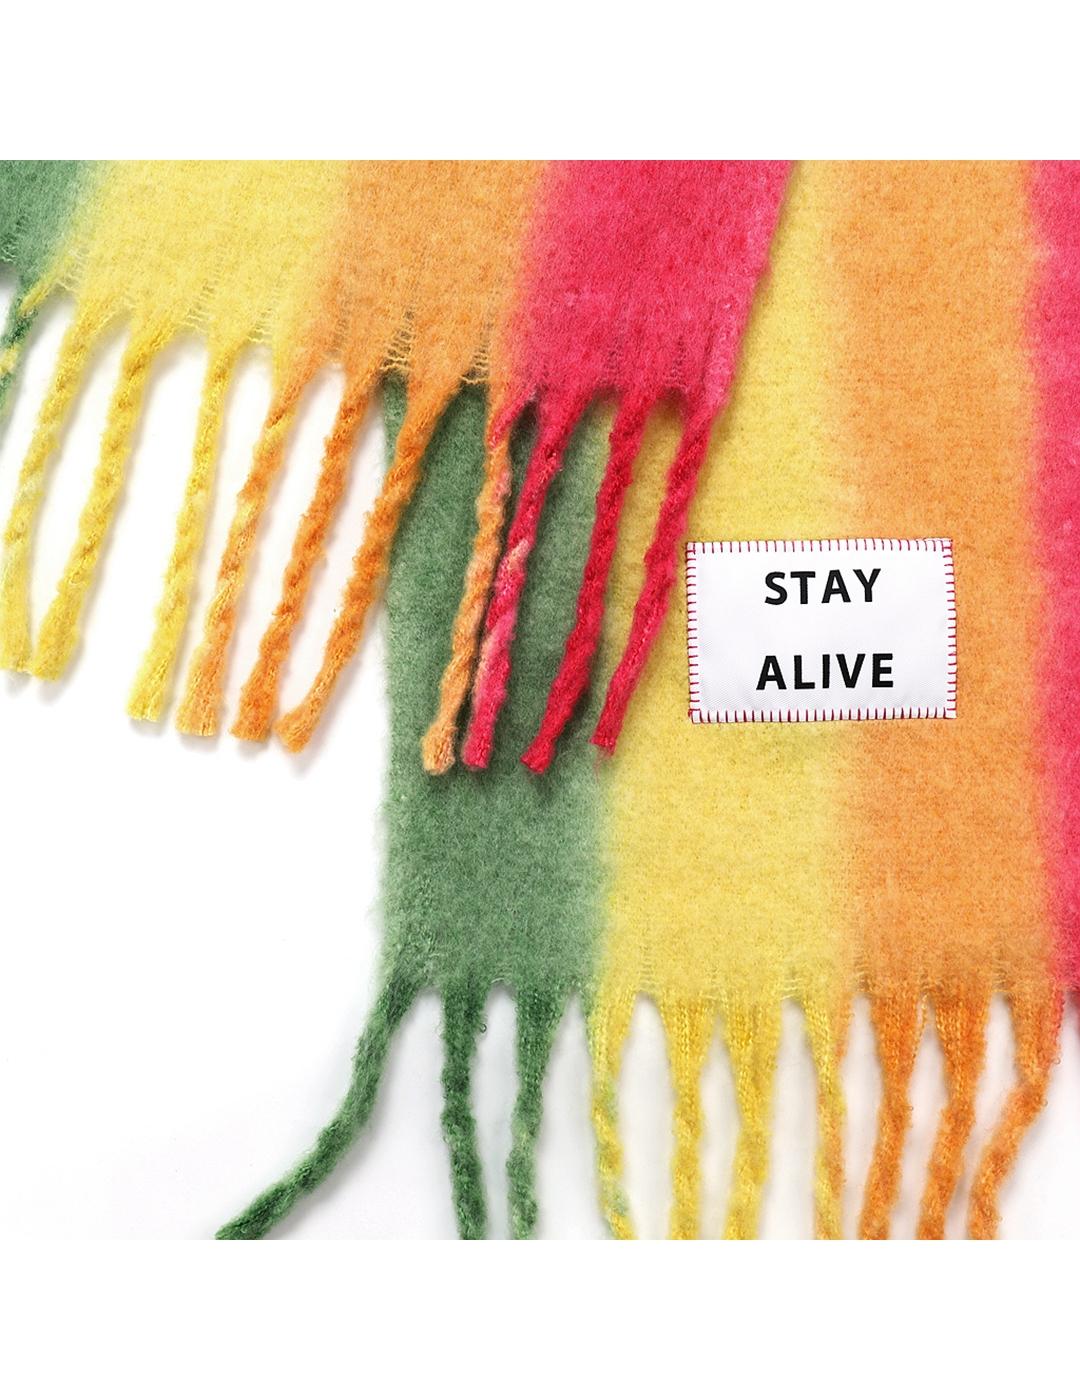 Bufanda Verb To Do Stay Alive multicolor unisex